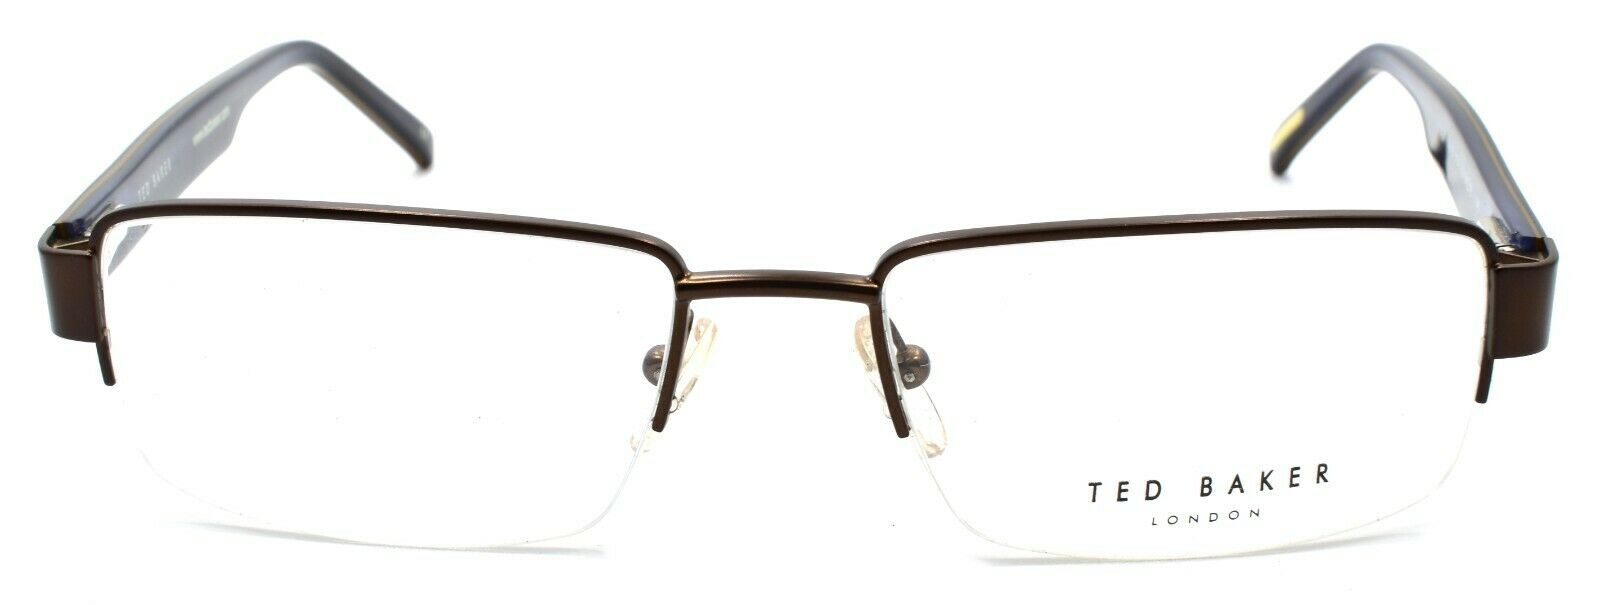 2-Ted Baker Spur 4216 154 Men's Eyeglasses Frames Half-rim 54-18-140 Brown-4894327036196-IKSpecs